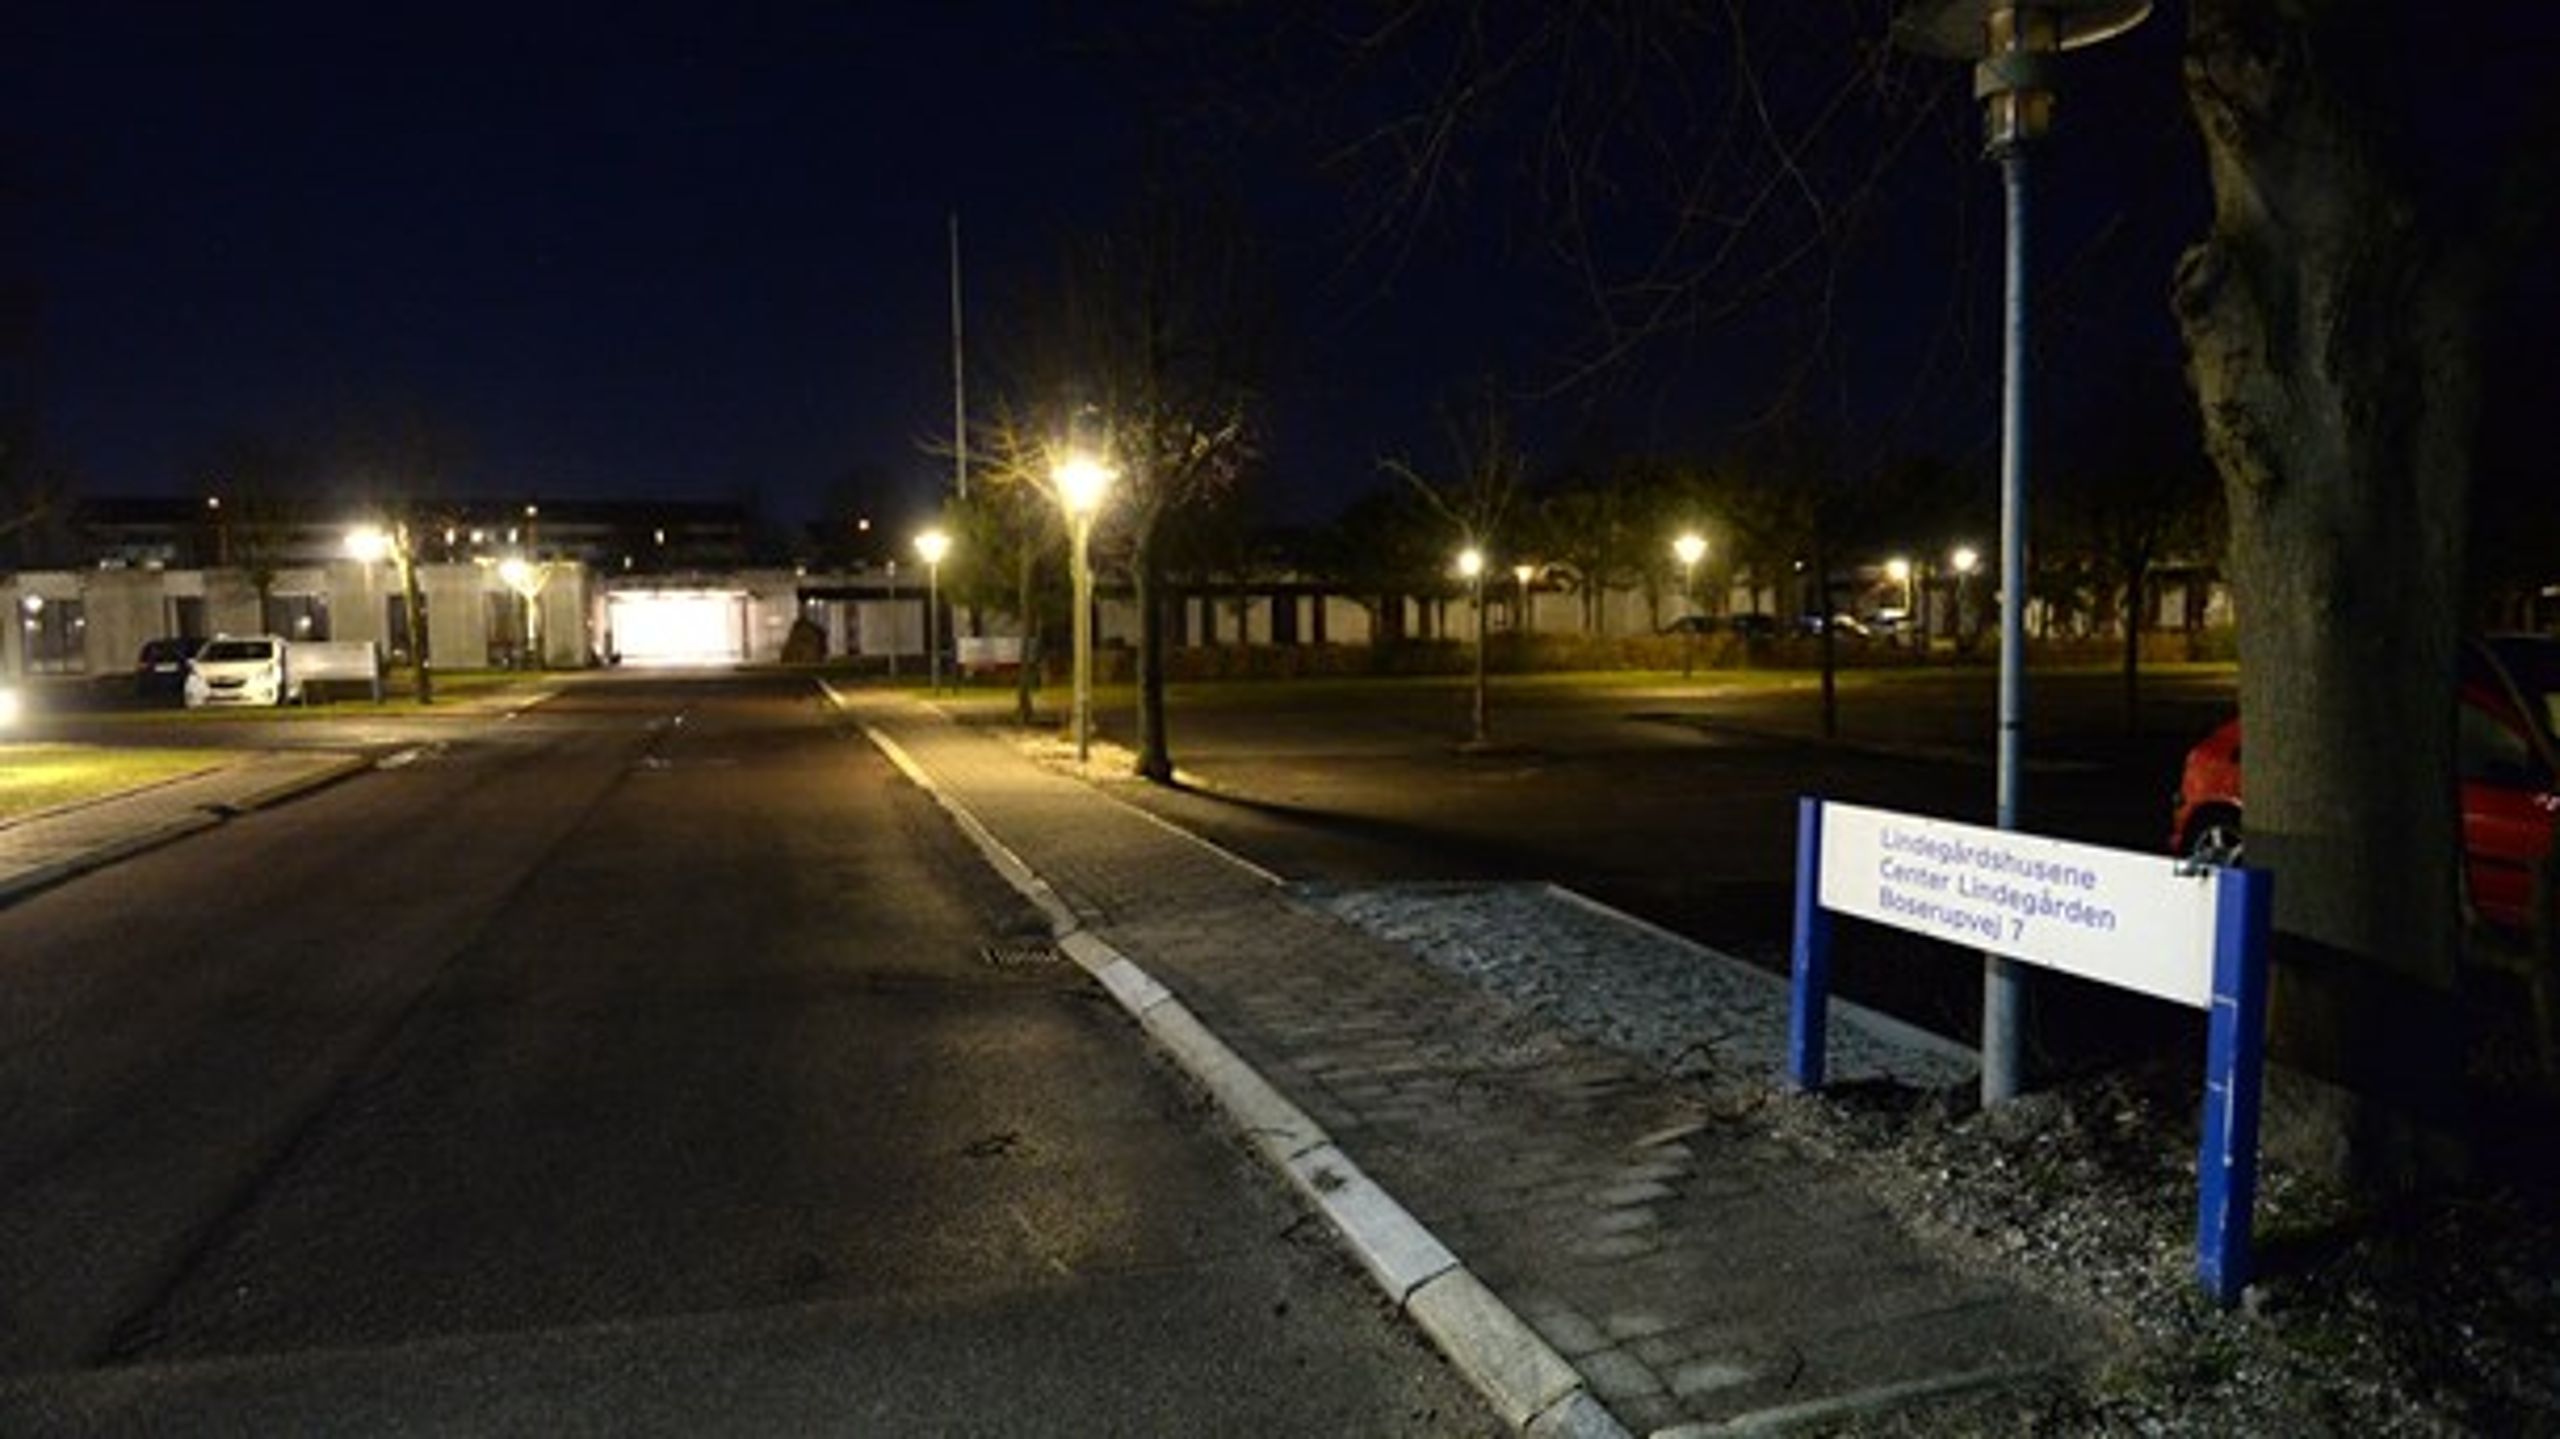 Center Lindegården i Roskilde er et af de kommunale bosteder, der har været ramt af drab på personale.